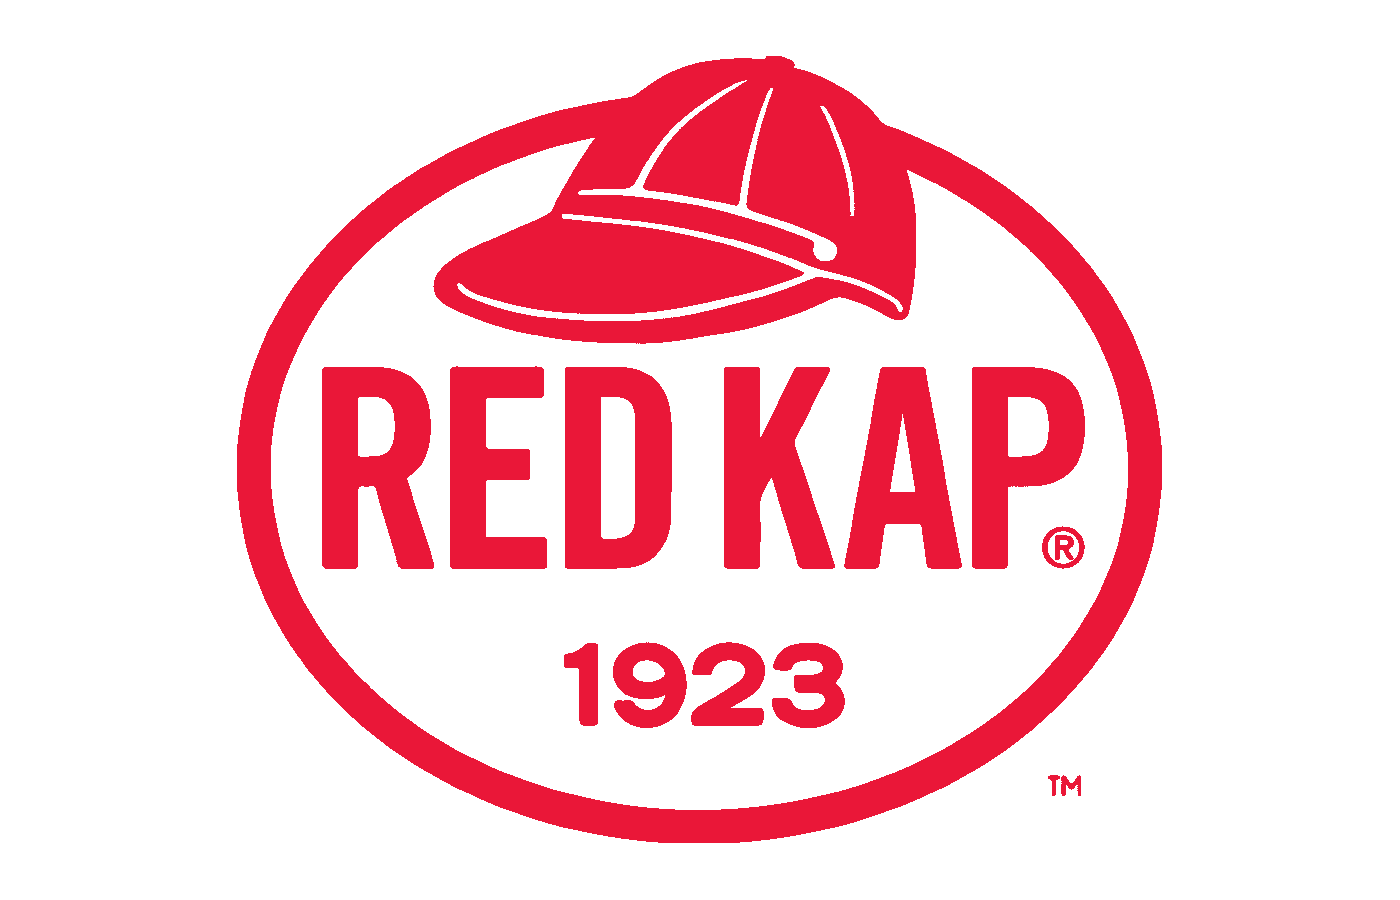 red clothing logos